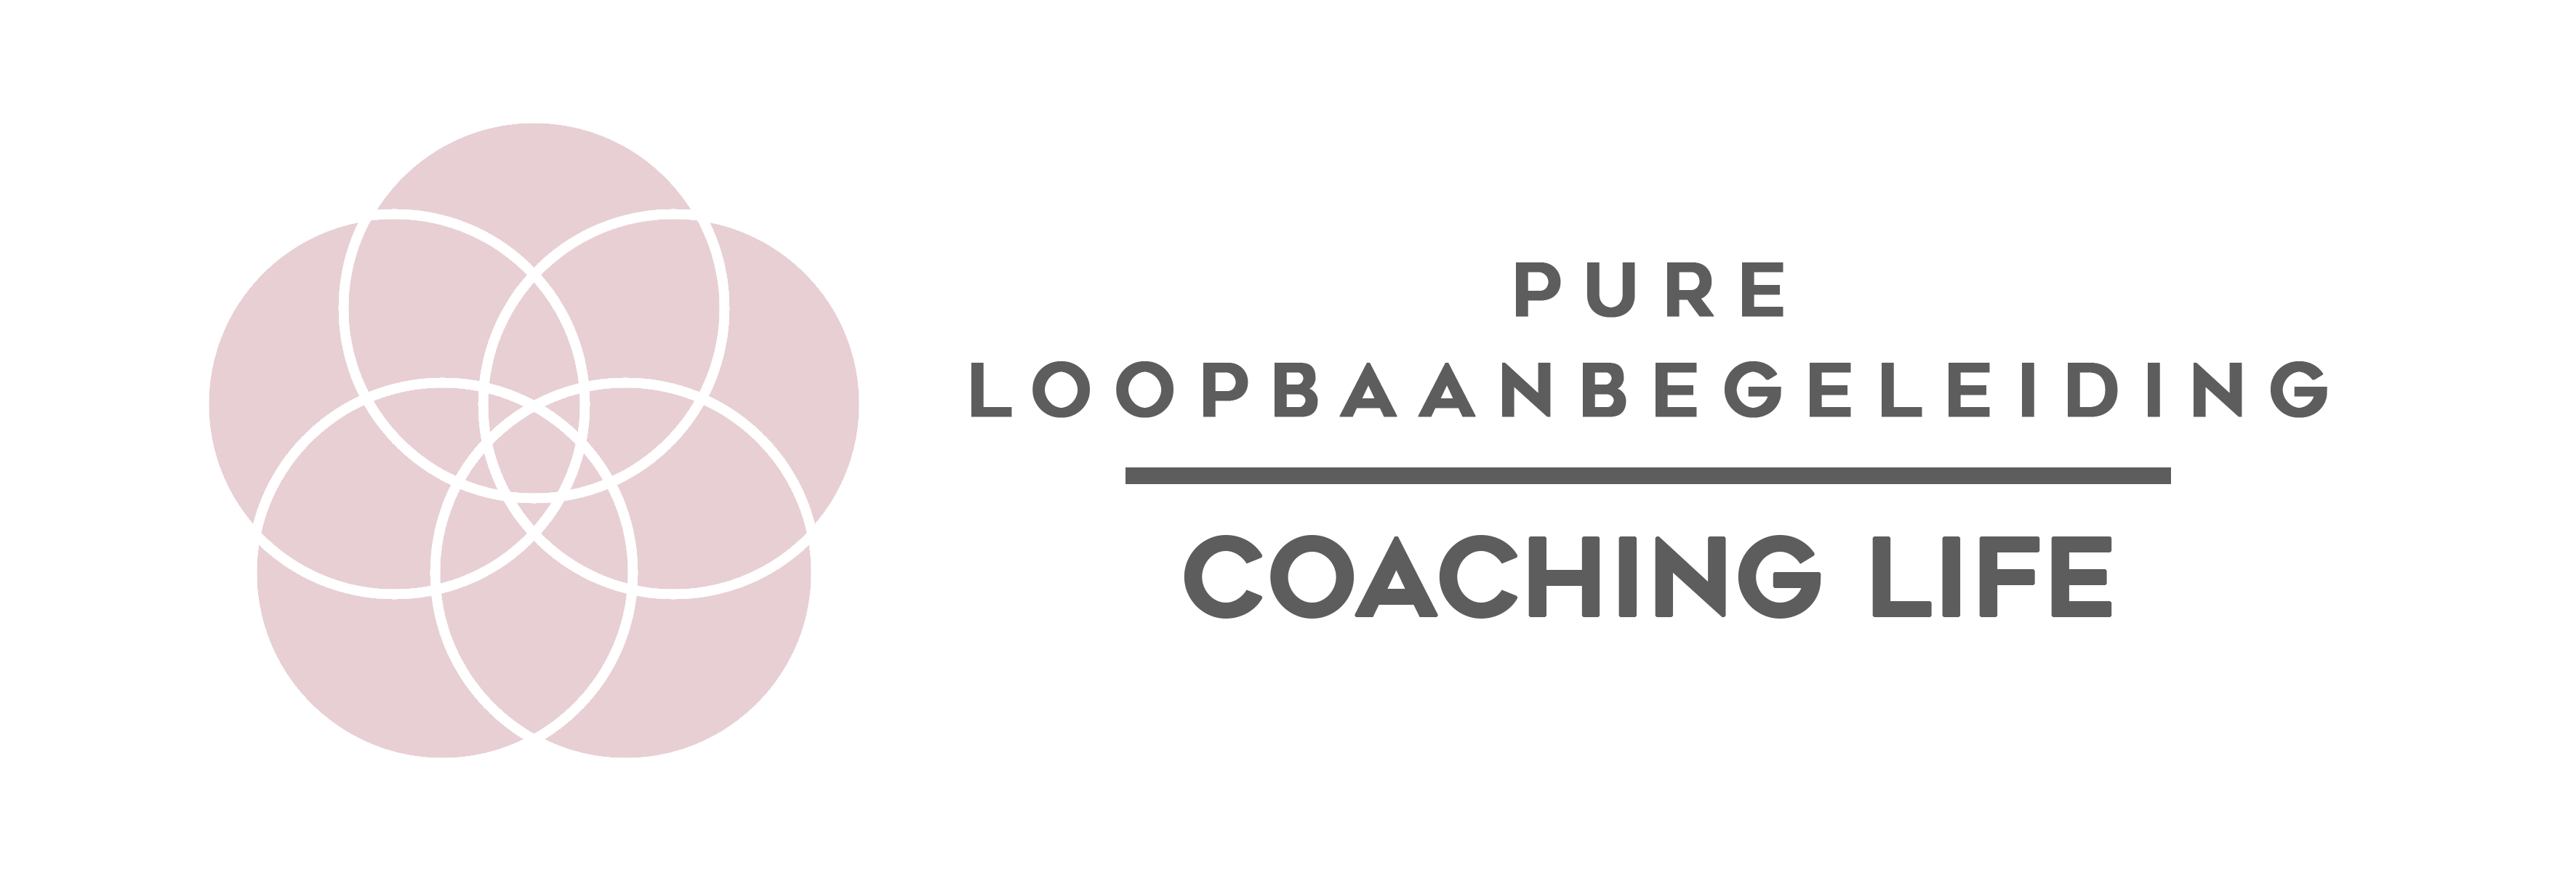 logo-coaching-life